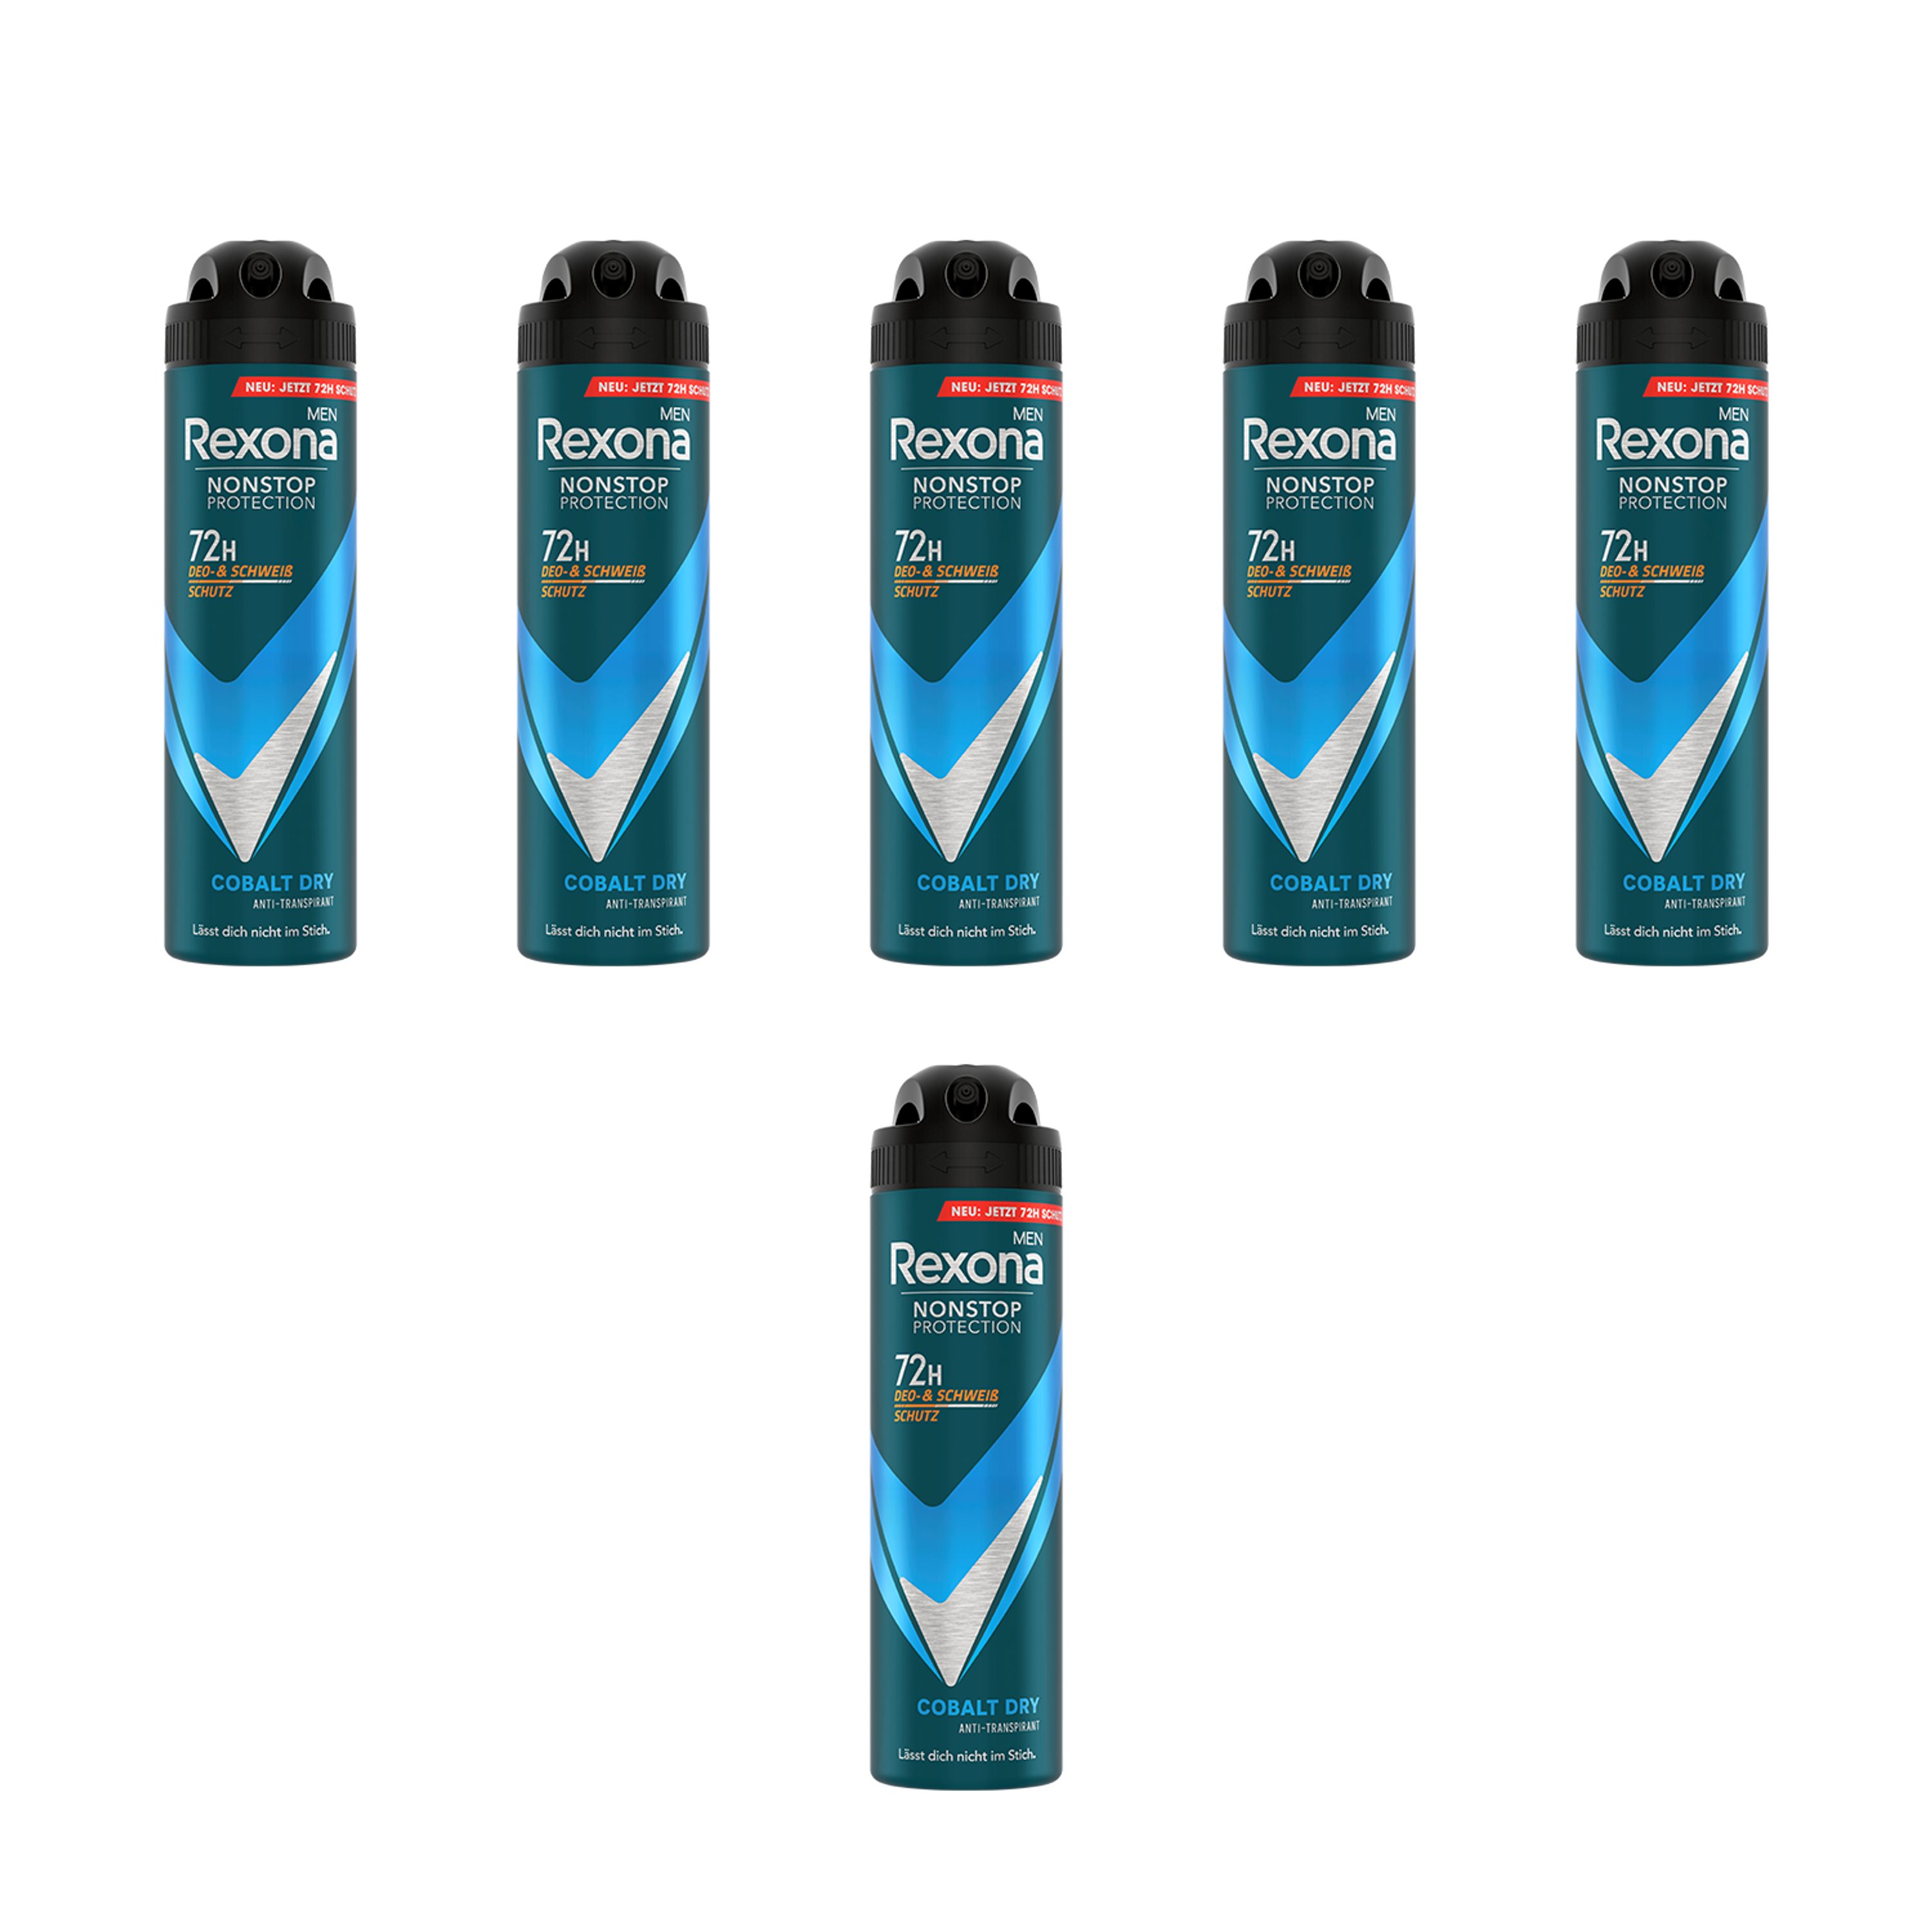 Rexona Deo-Set 6x 150ml Deospray Nonstop Protection Cobalt Dry, 72 Stunden Schutz vor Schweiß und Körpergeruch